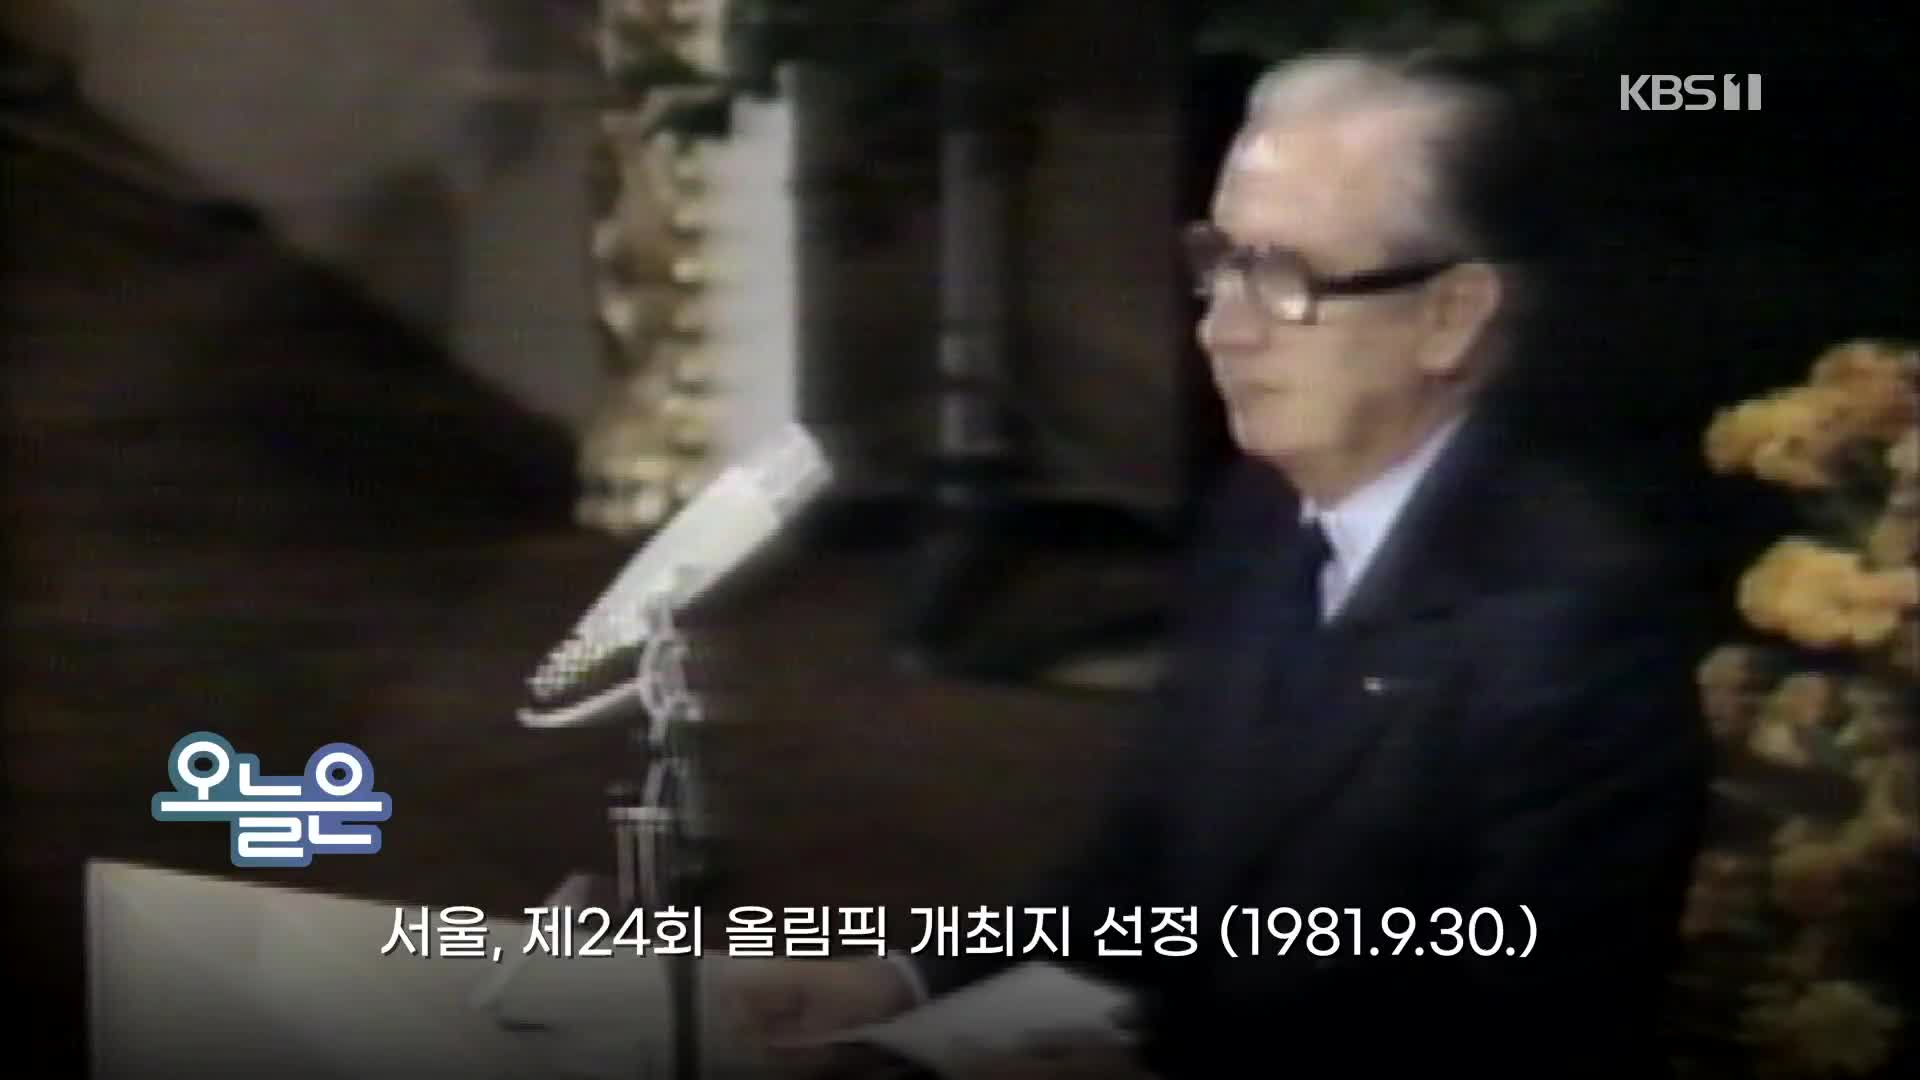 [오늘은] 서울, 제24회 올림픽 개최지 선정 (1981.9.30.)